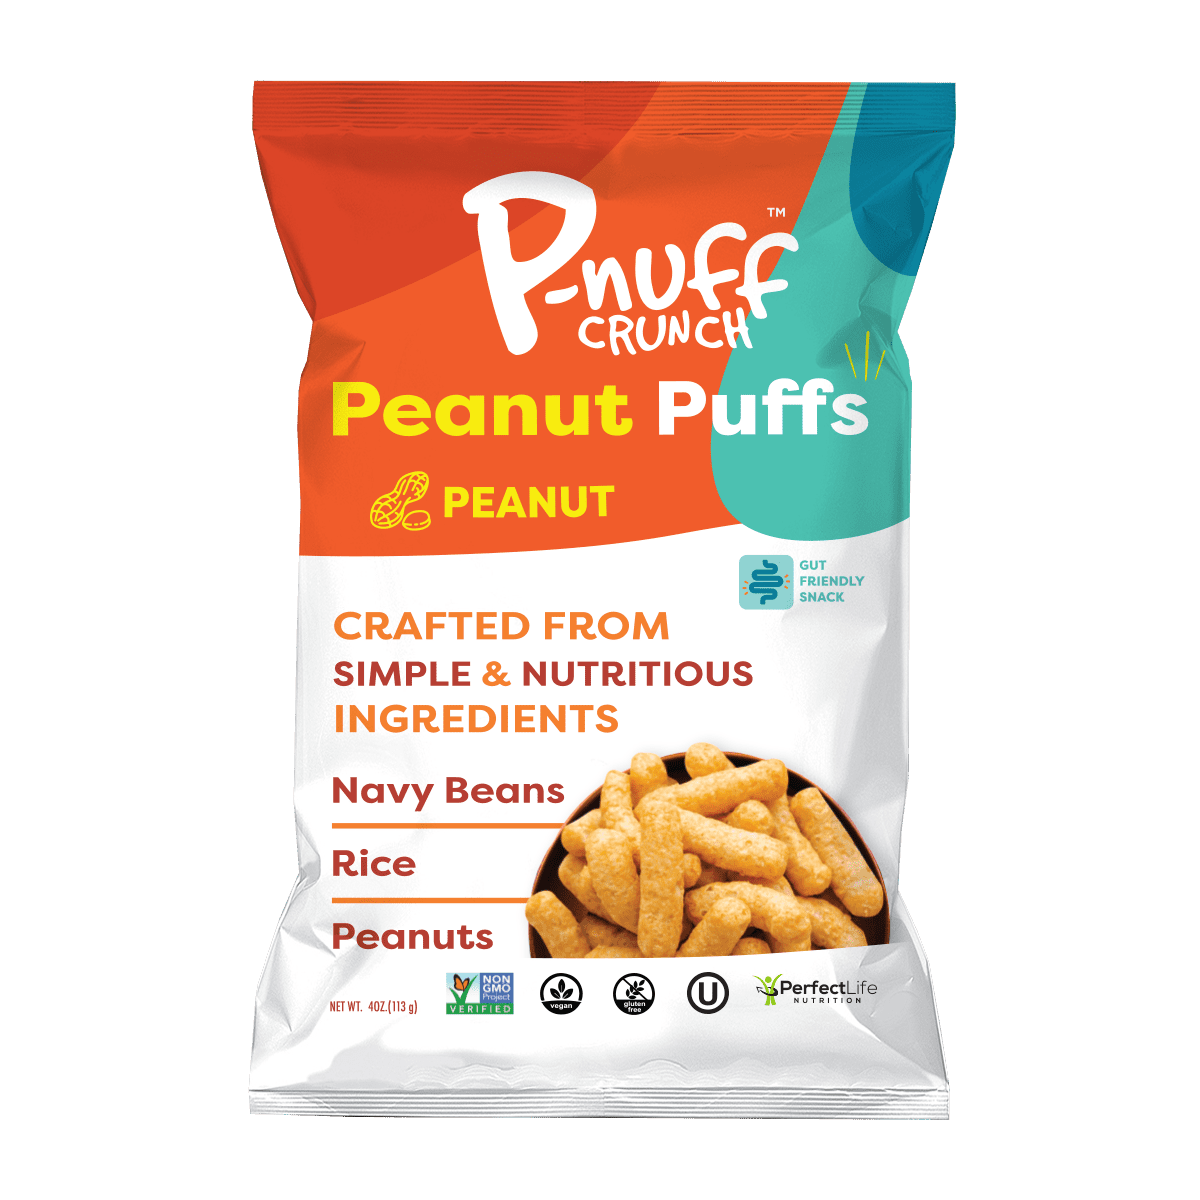 P-nuff Crunch Original 15 units per case 4.0 oz